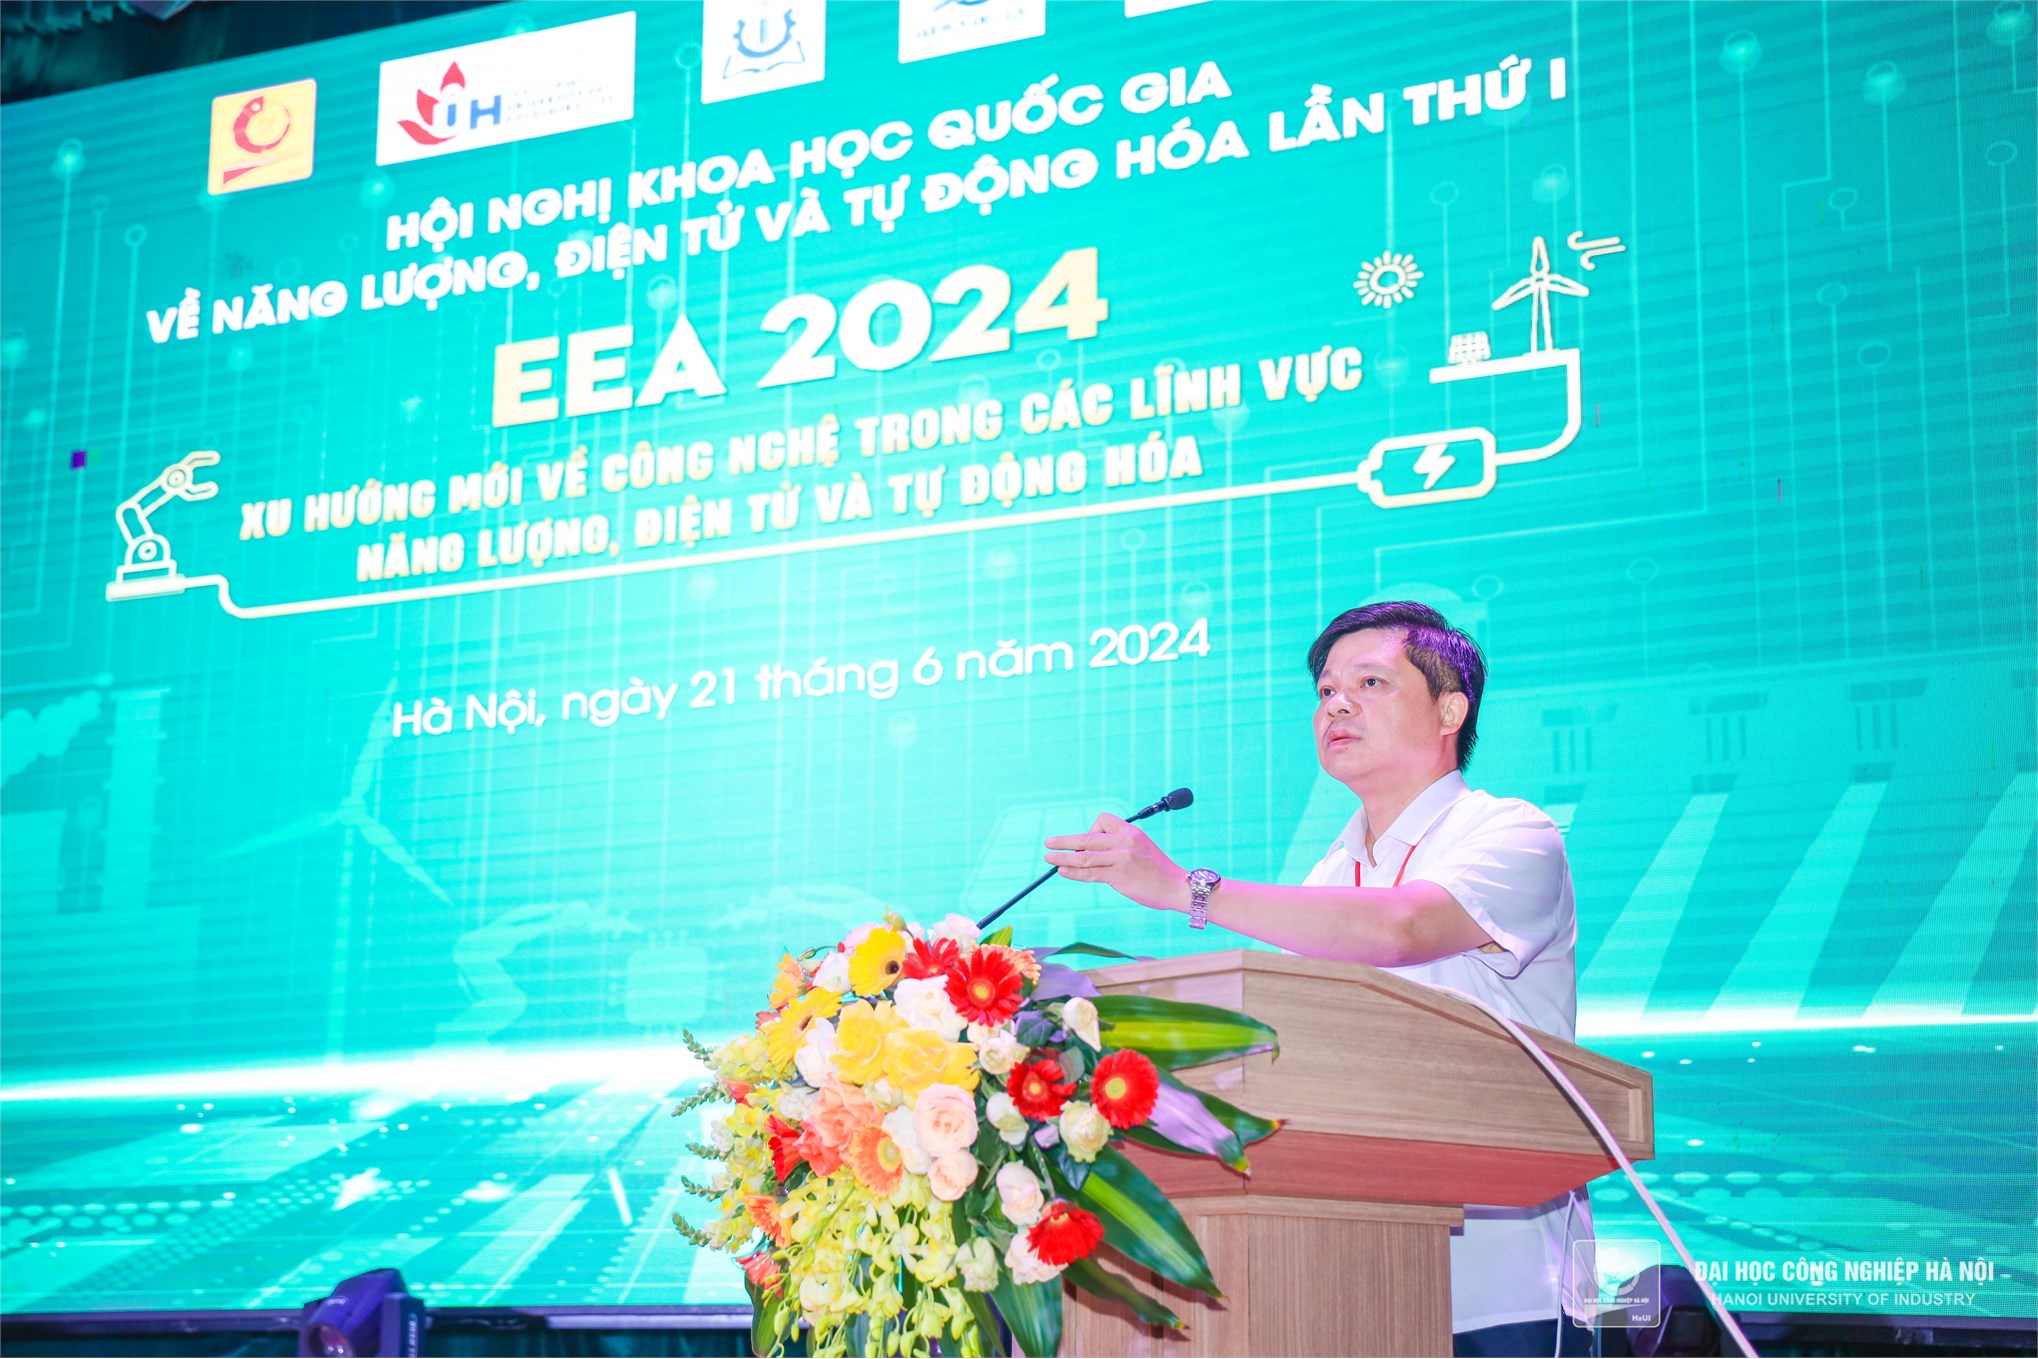 Hội nghị khoa học quốc gia về Năng lượng, Điện tử và Tự động hóa lần thứ nhất (EEA 2024)